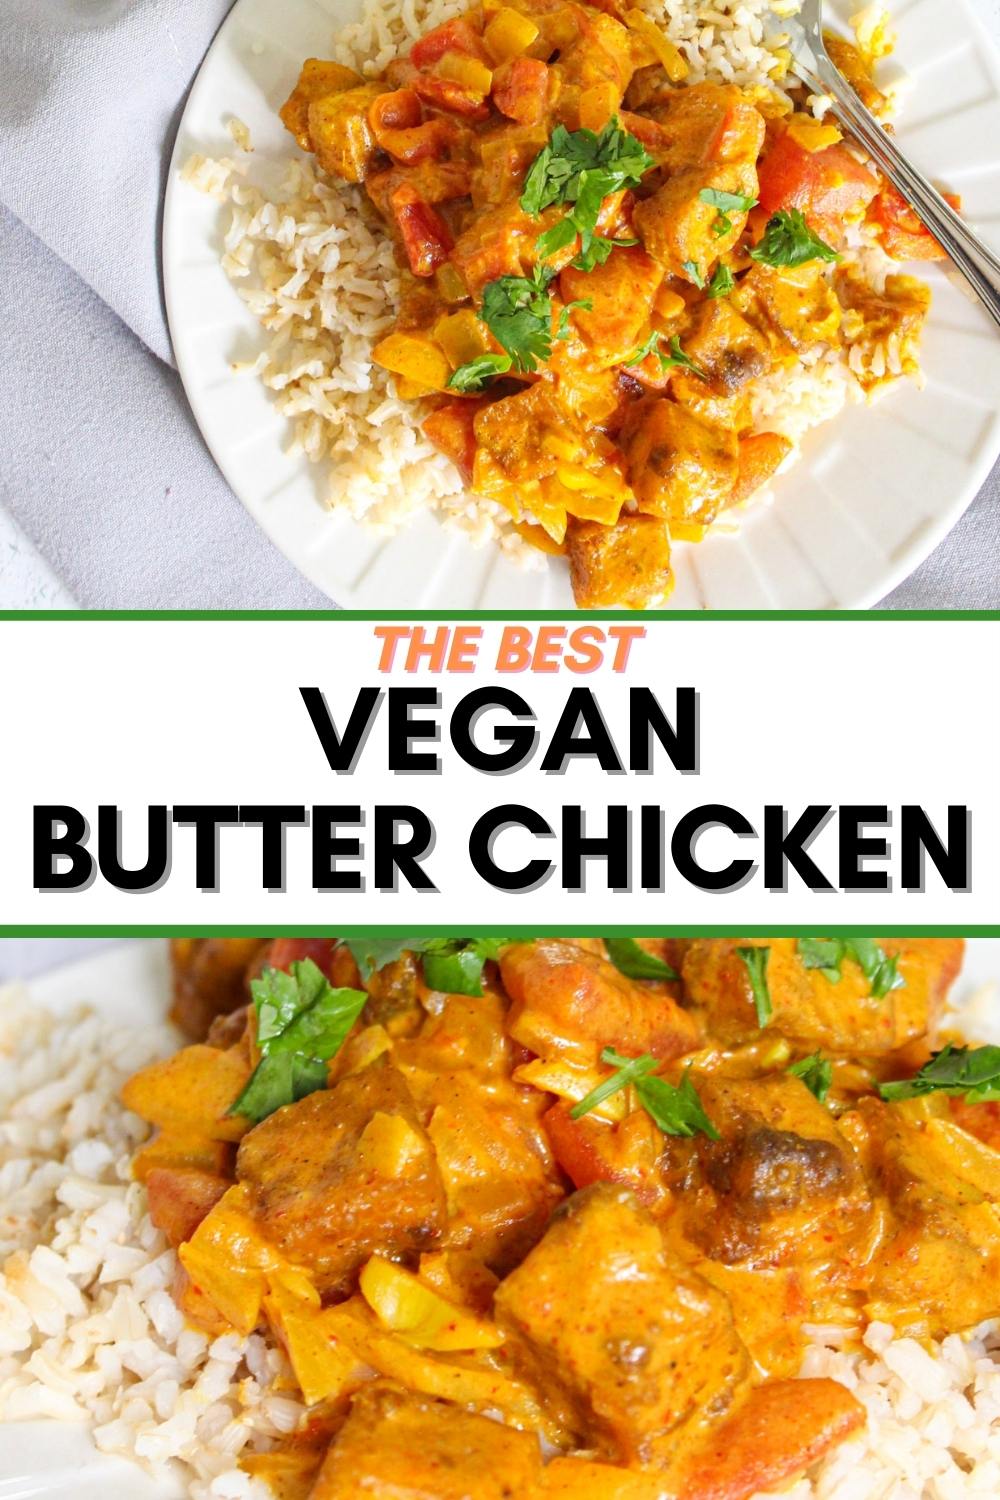 Plate of vegan butter chicken